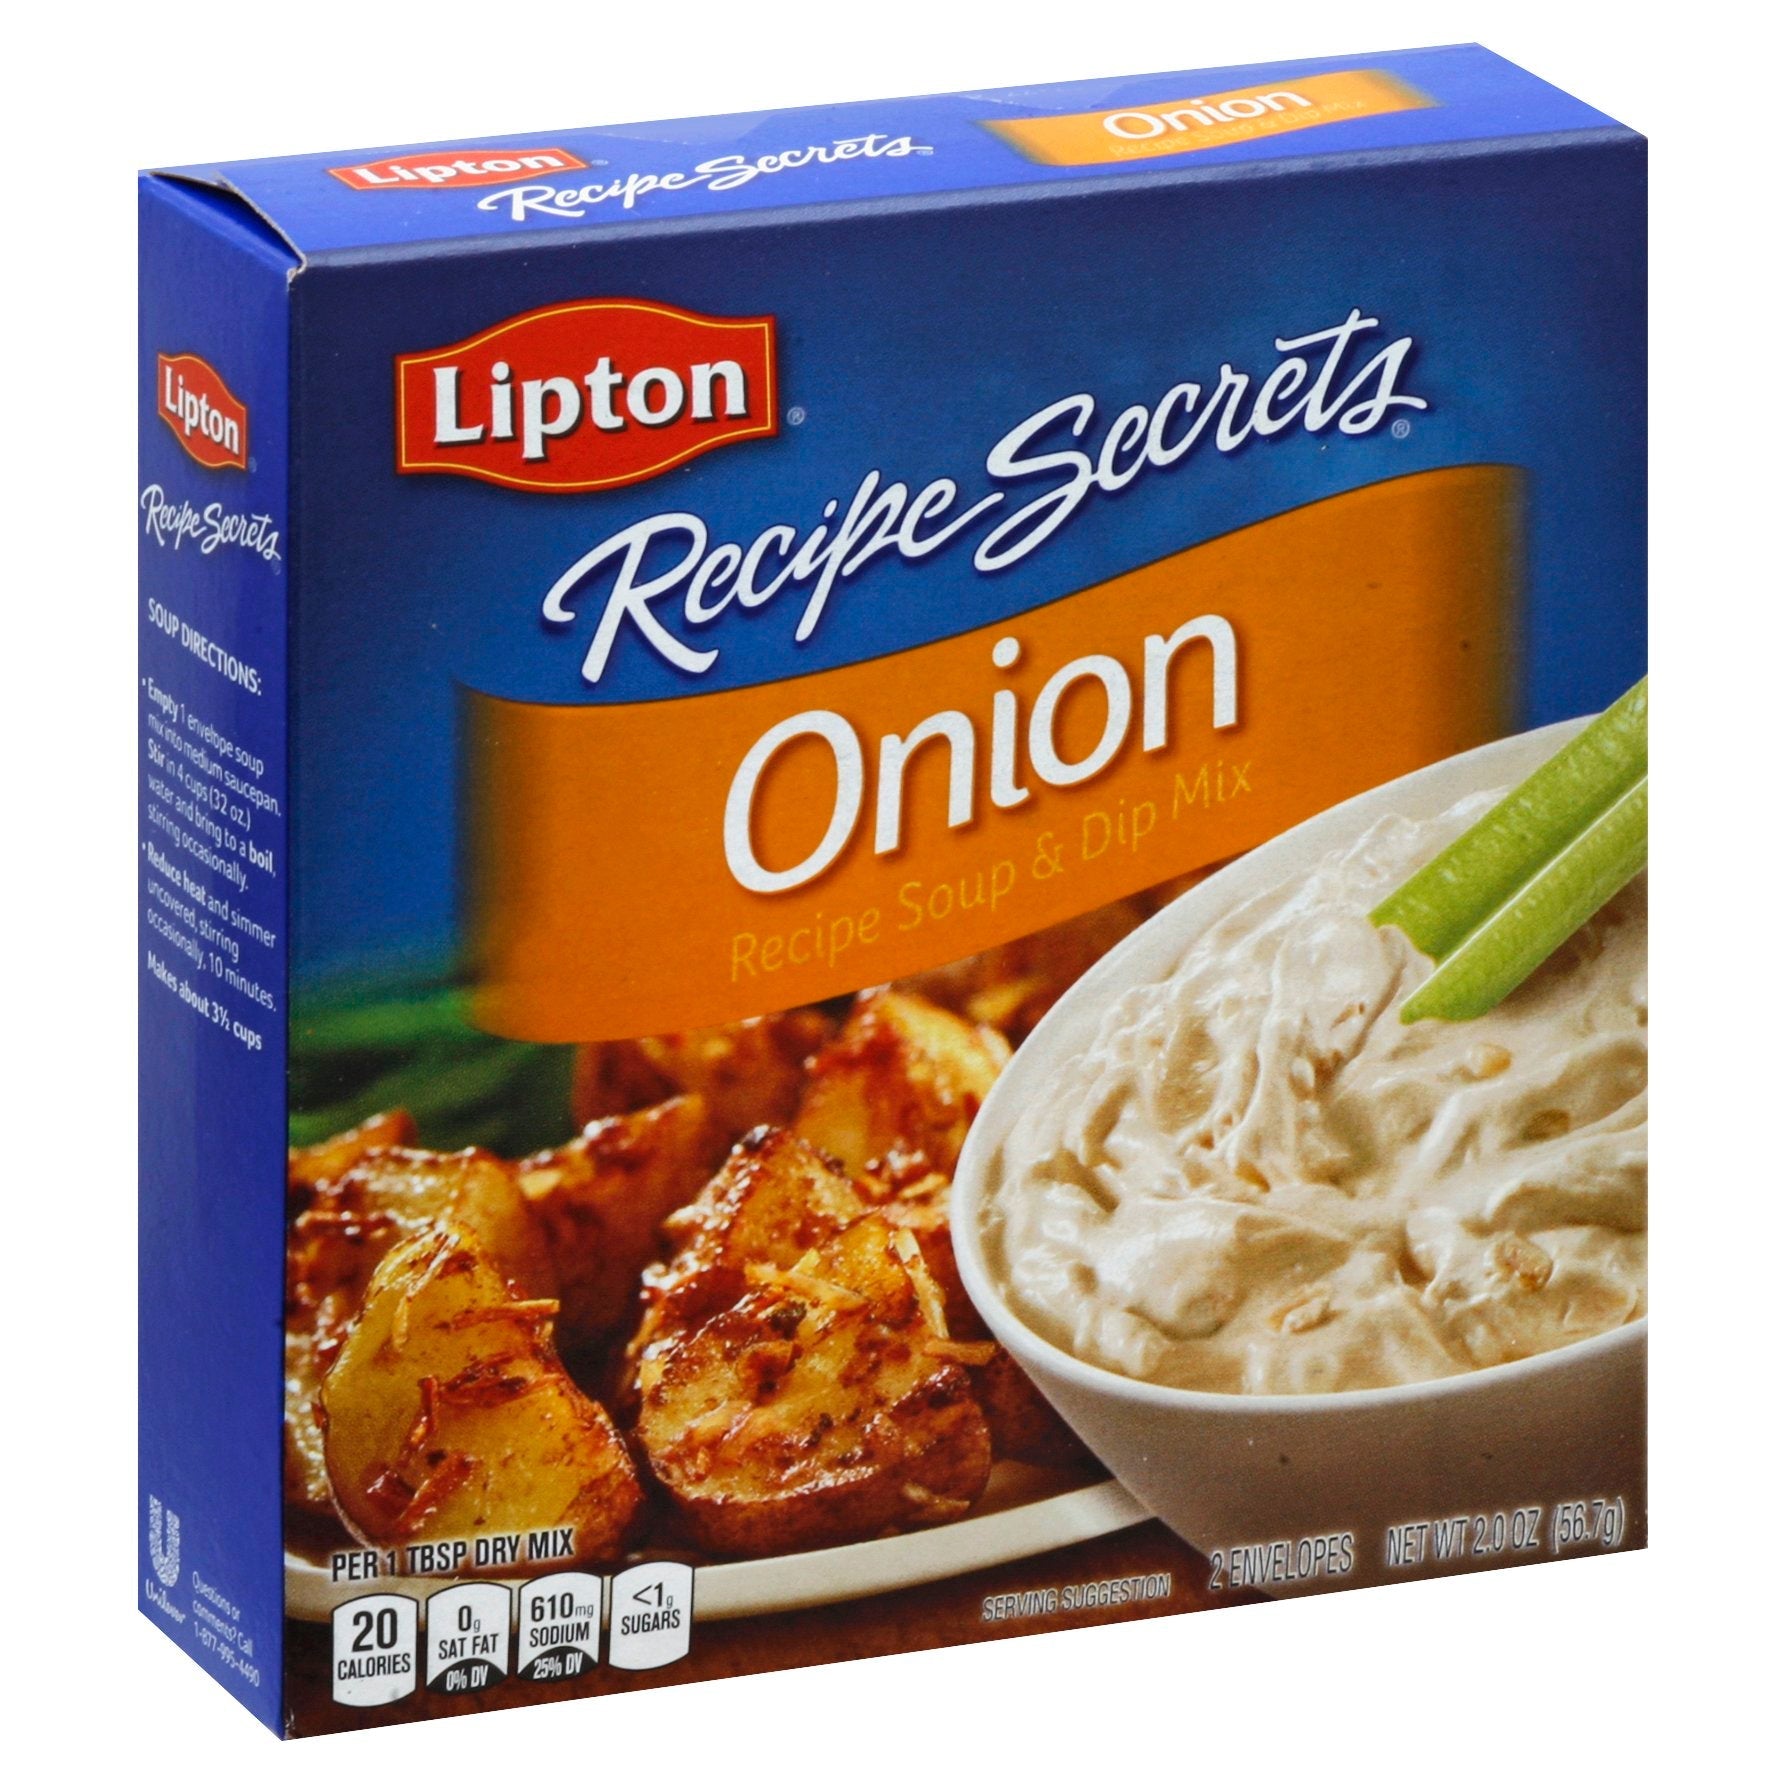 Lipton Recipe Secrets Soup Mix Savory Herb With Garlic - 2.4 OZ 12